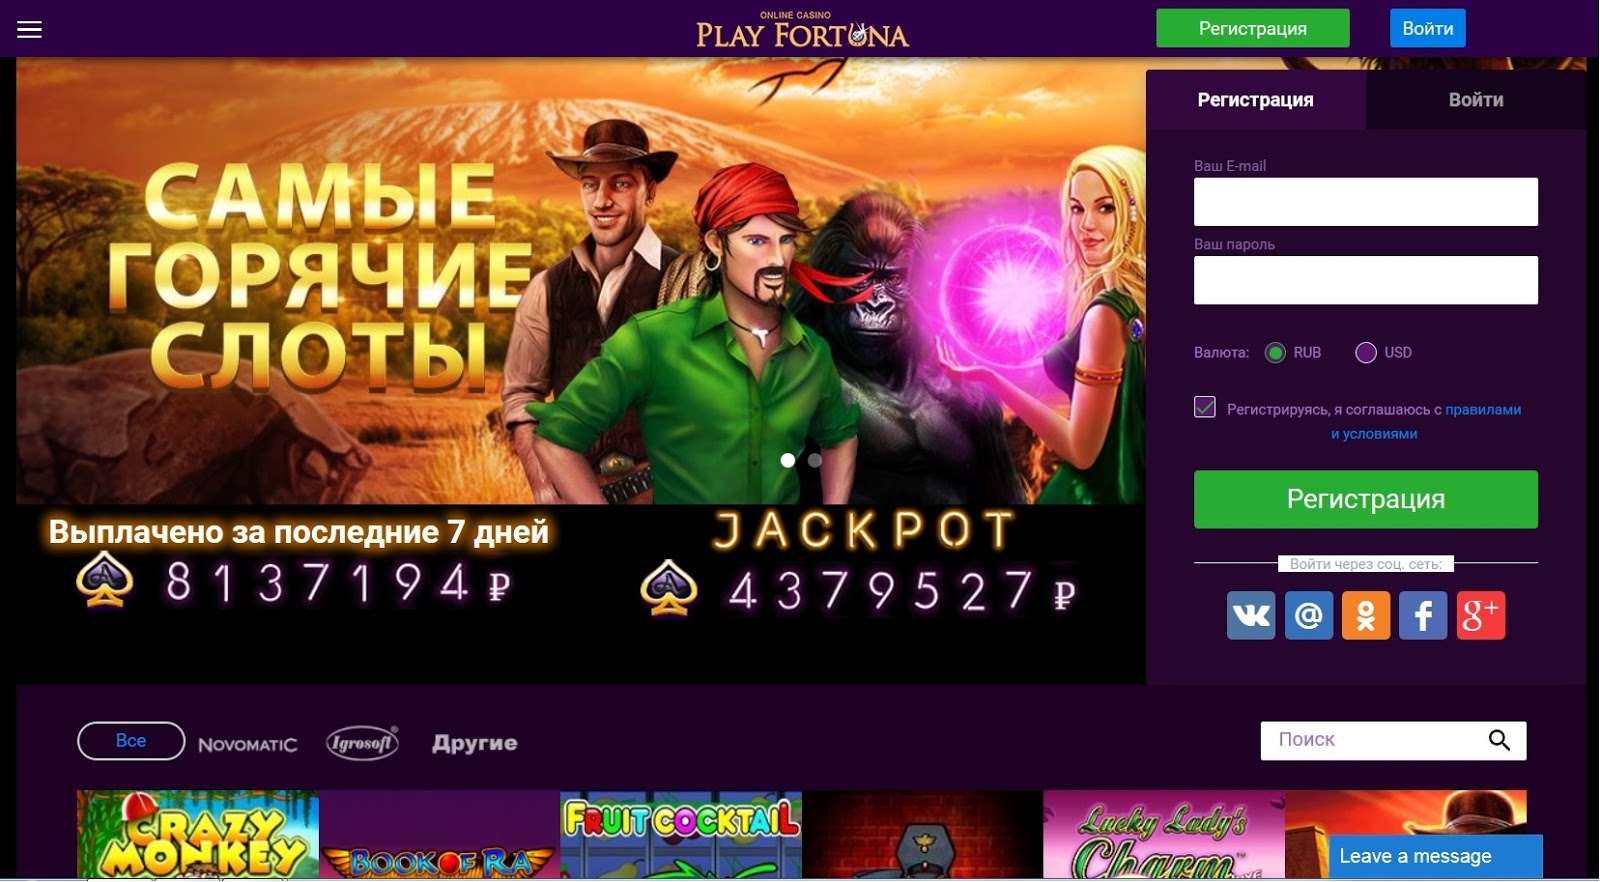 Fortuna online casino играть рулетка онлайн без регистрации